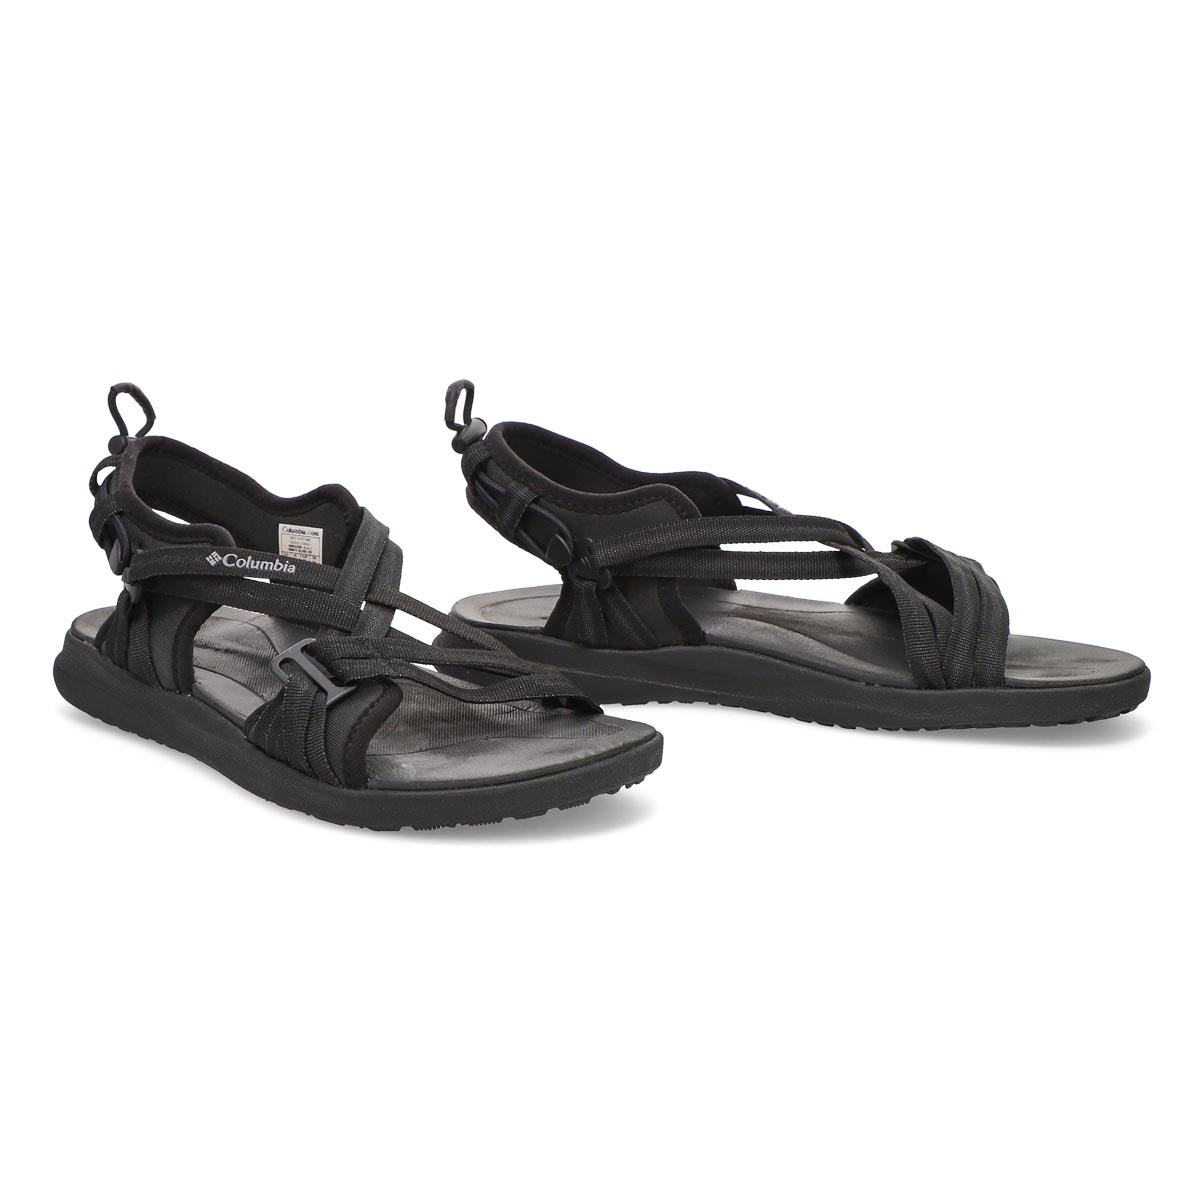 Sandales sport COLUMBIA SANDAL, noir/gris, femmes